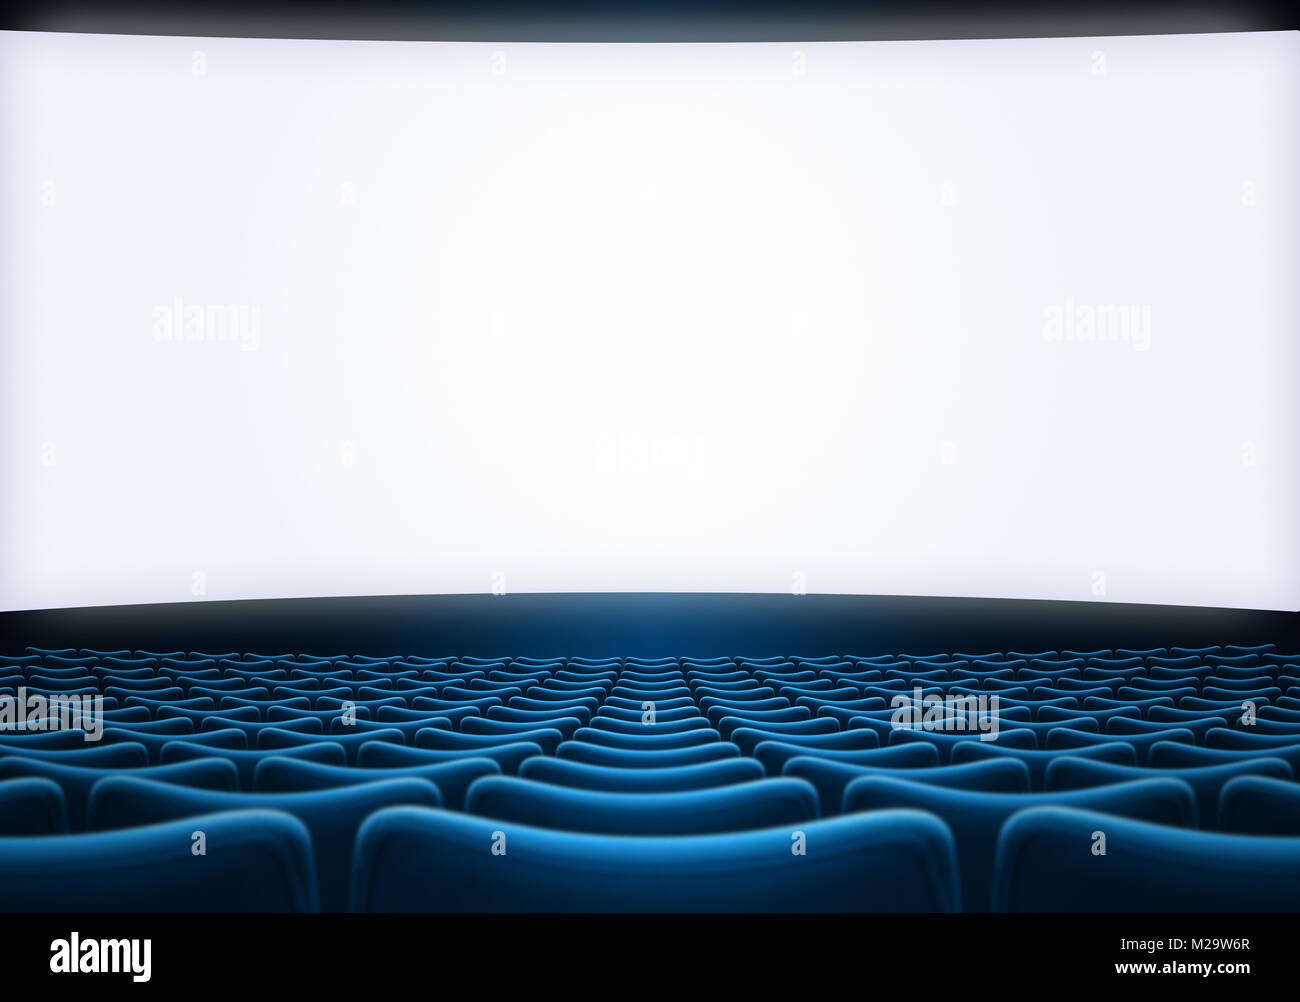 L'écran de cinéma avec sièges bleu Banque D'Images